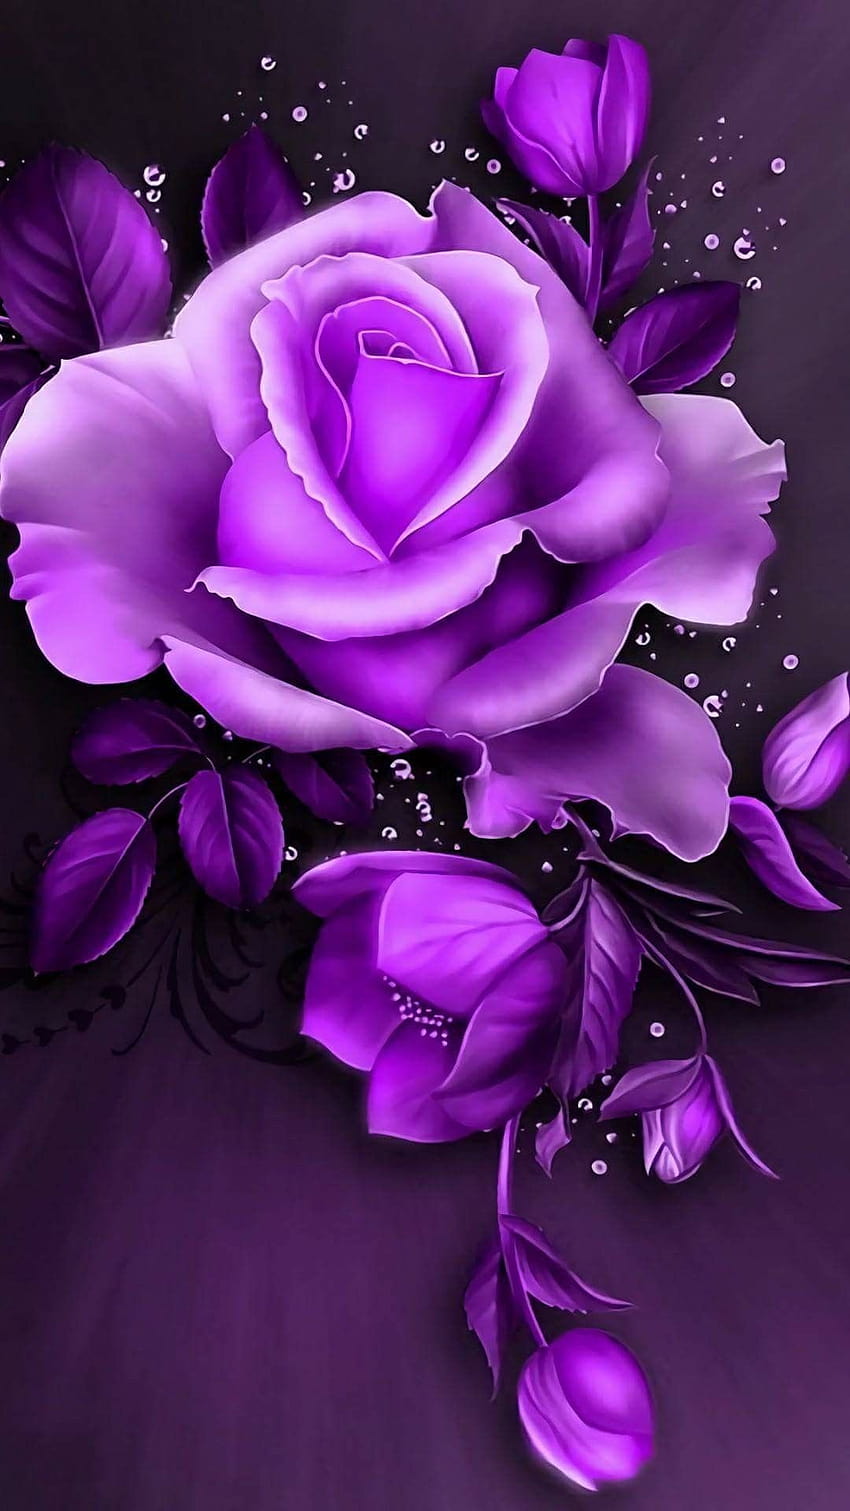 6 Black Roses, purple rose HD phone wallpaper